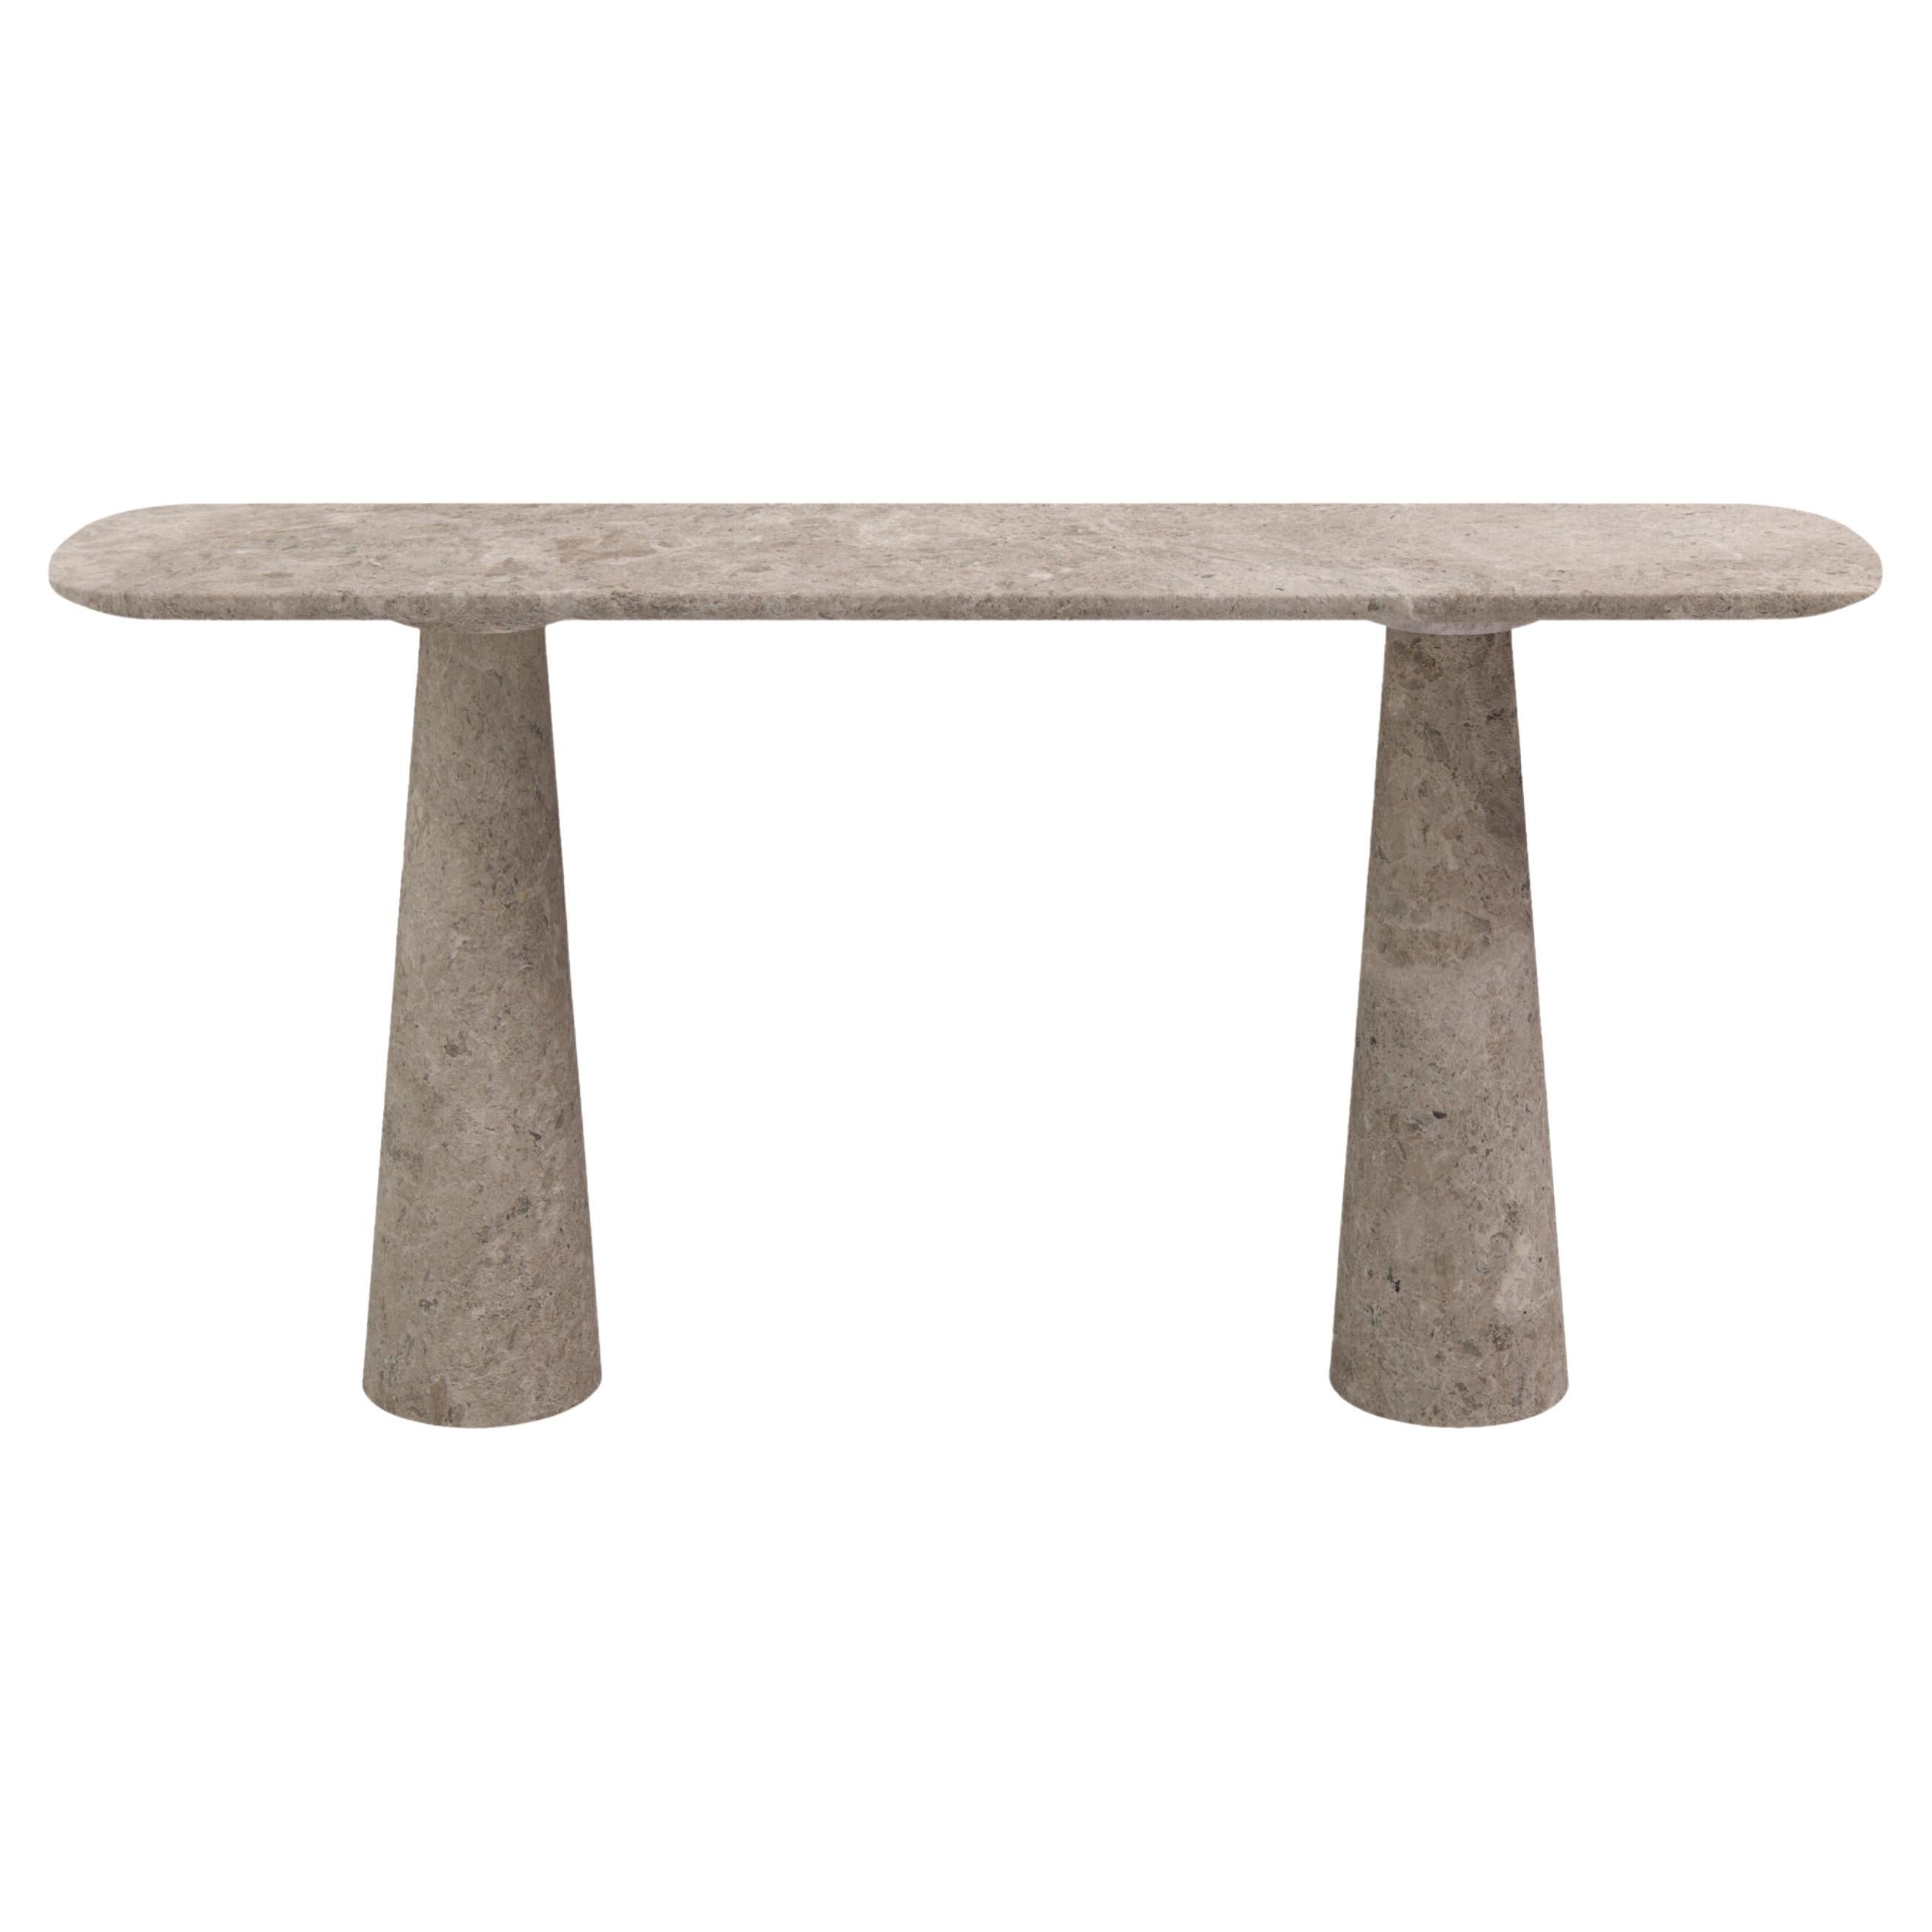 FORM(LA) Cono Console Table 60”L x 15”W x 33”H Tundra Gray Marble For Sale